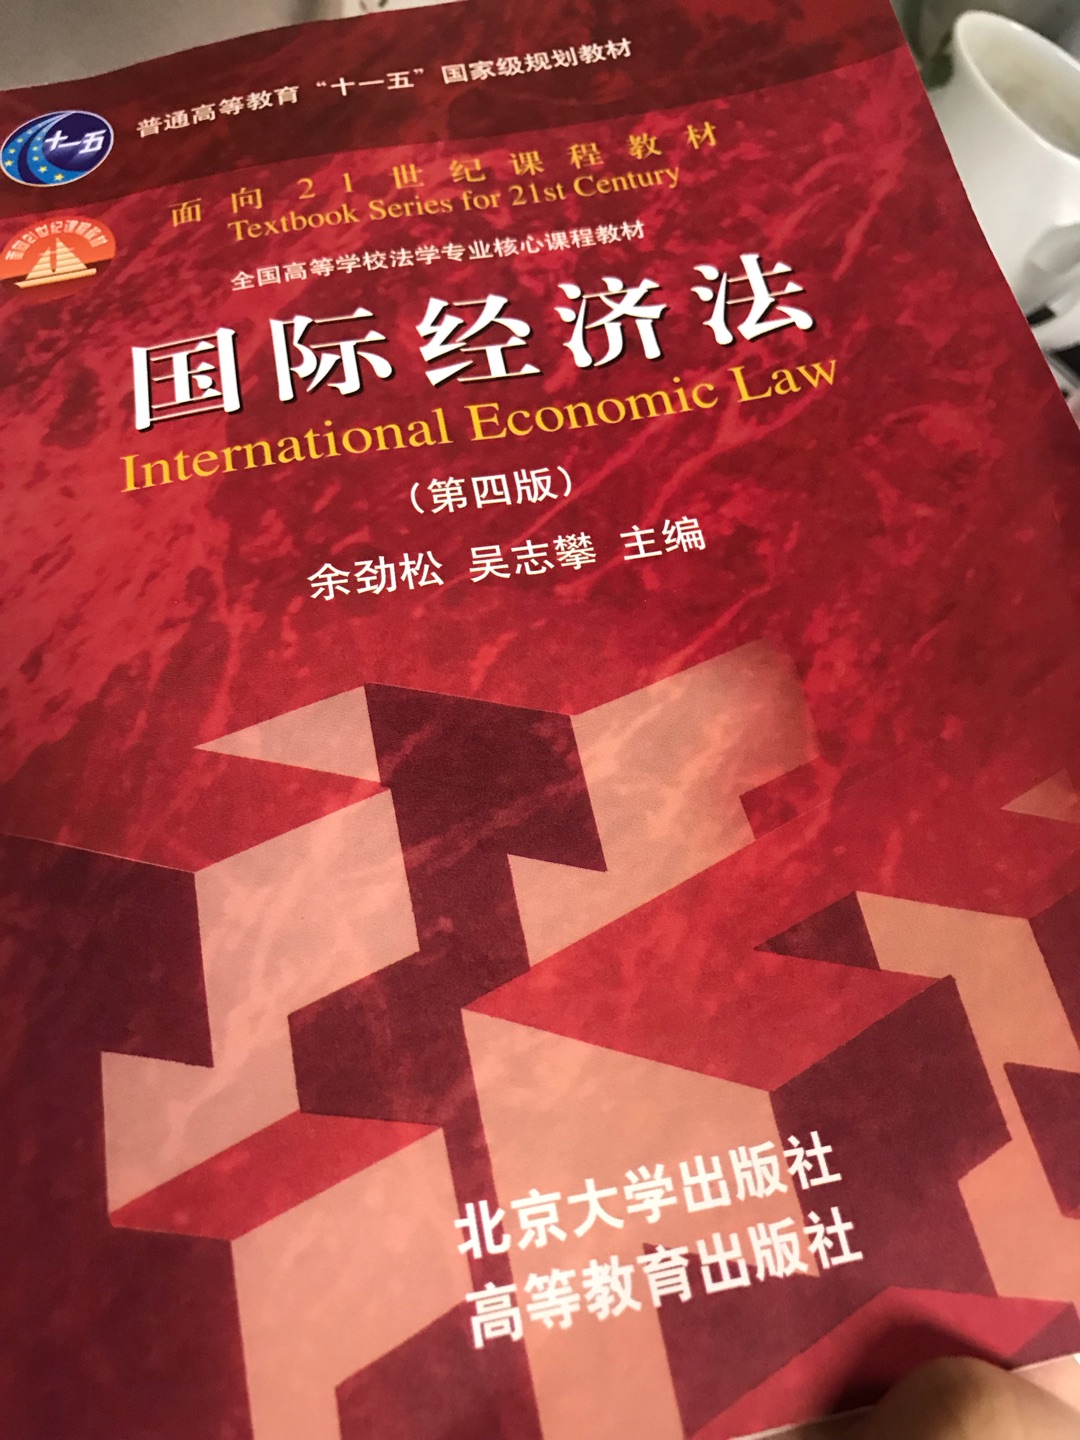 买来看看，给自己增长知识……书还不错，算是国际经济法的入门书籍吧，以后会买同系列的国际商法等书